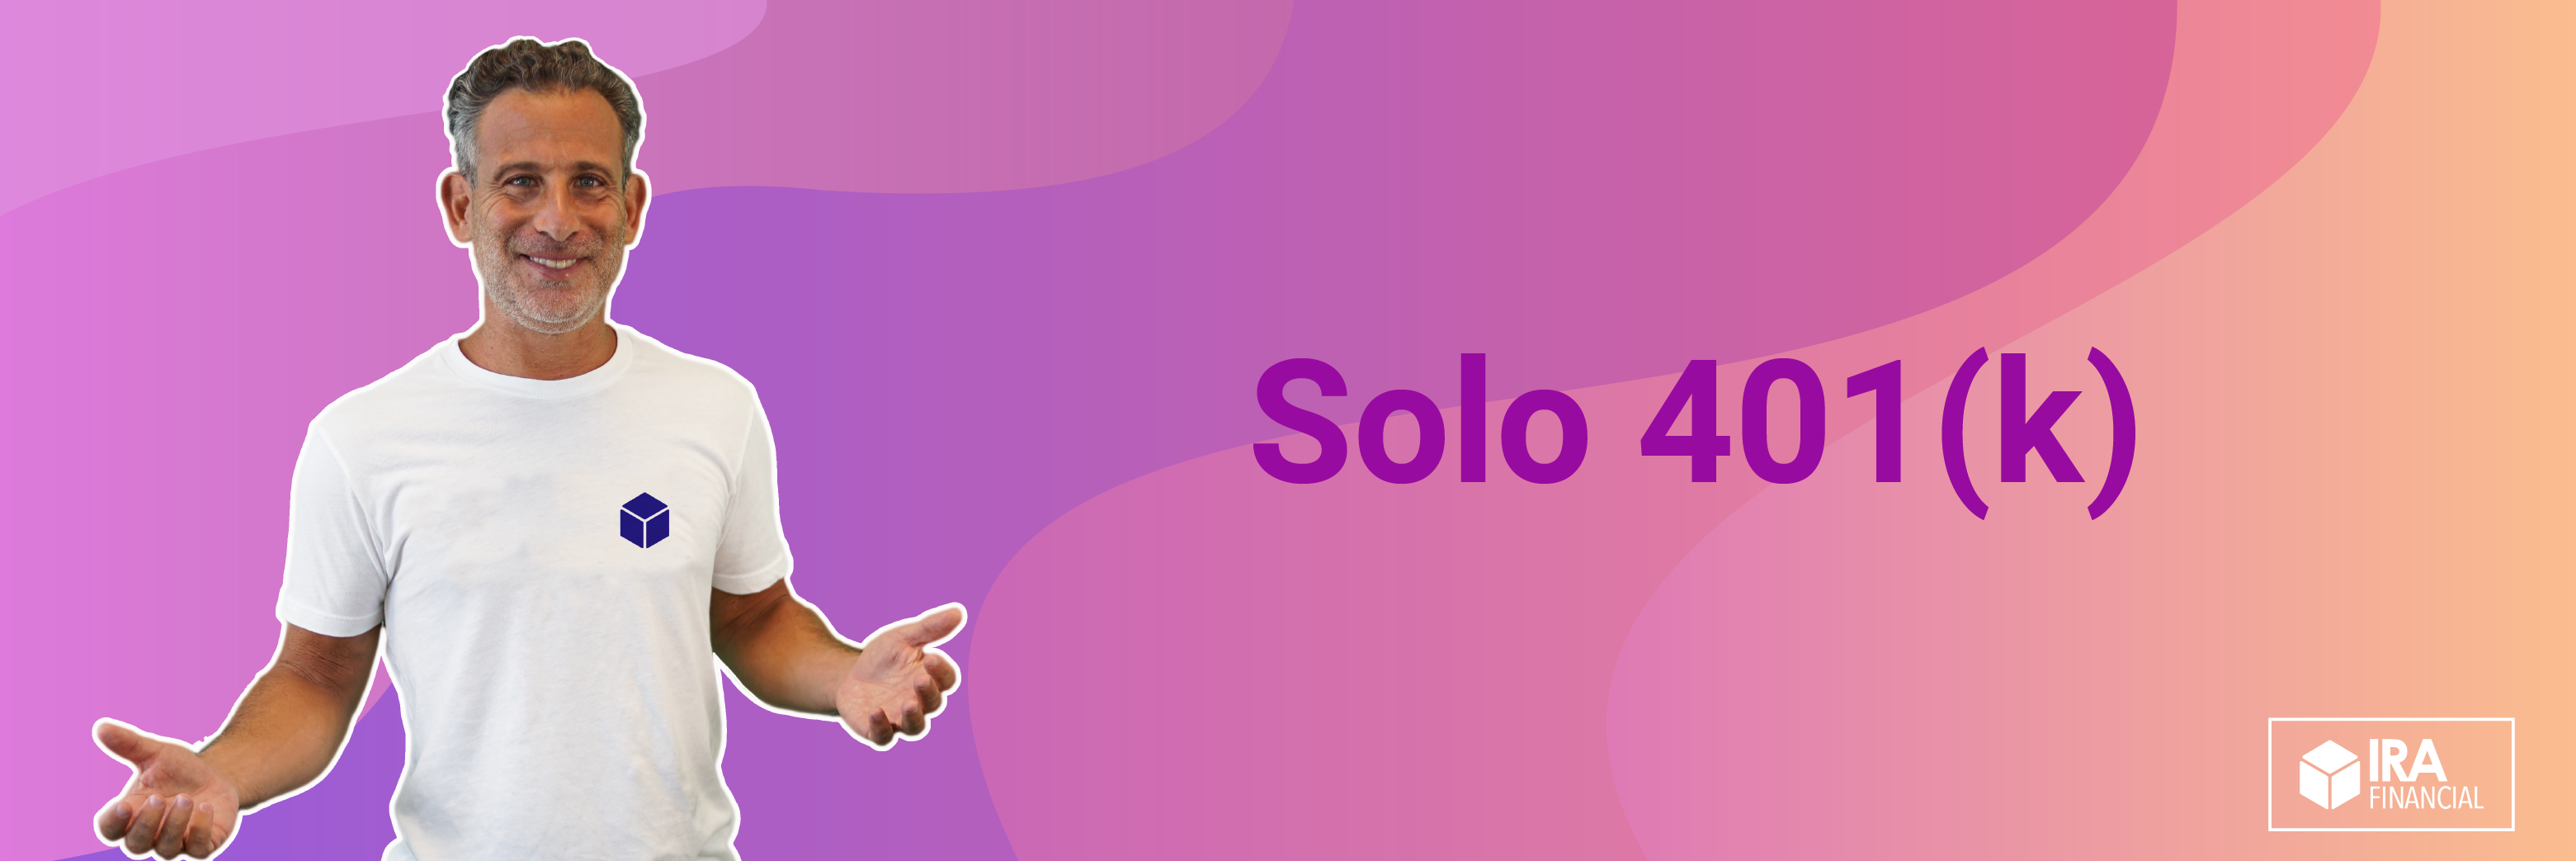 Solo 401(k) Videos